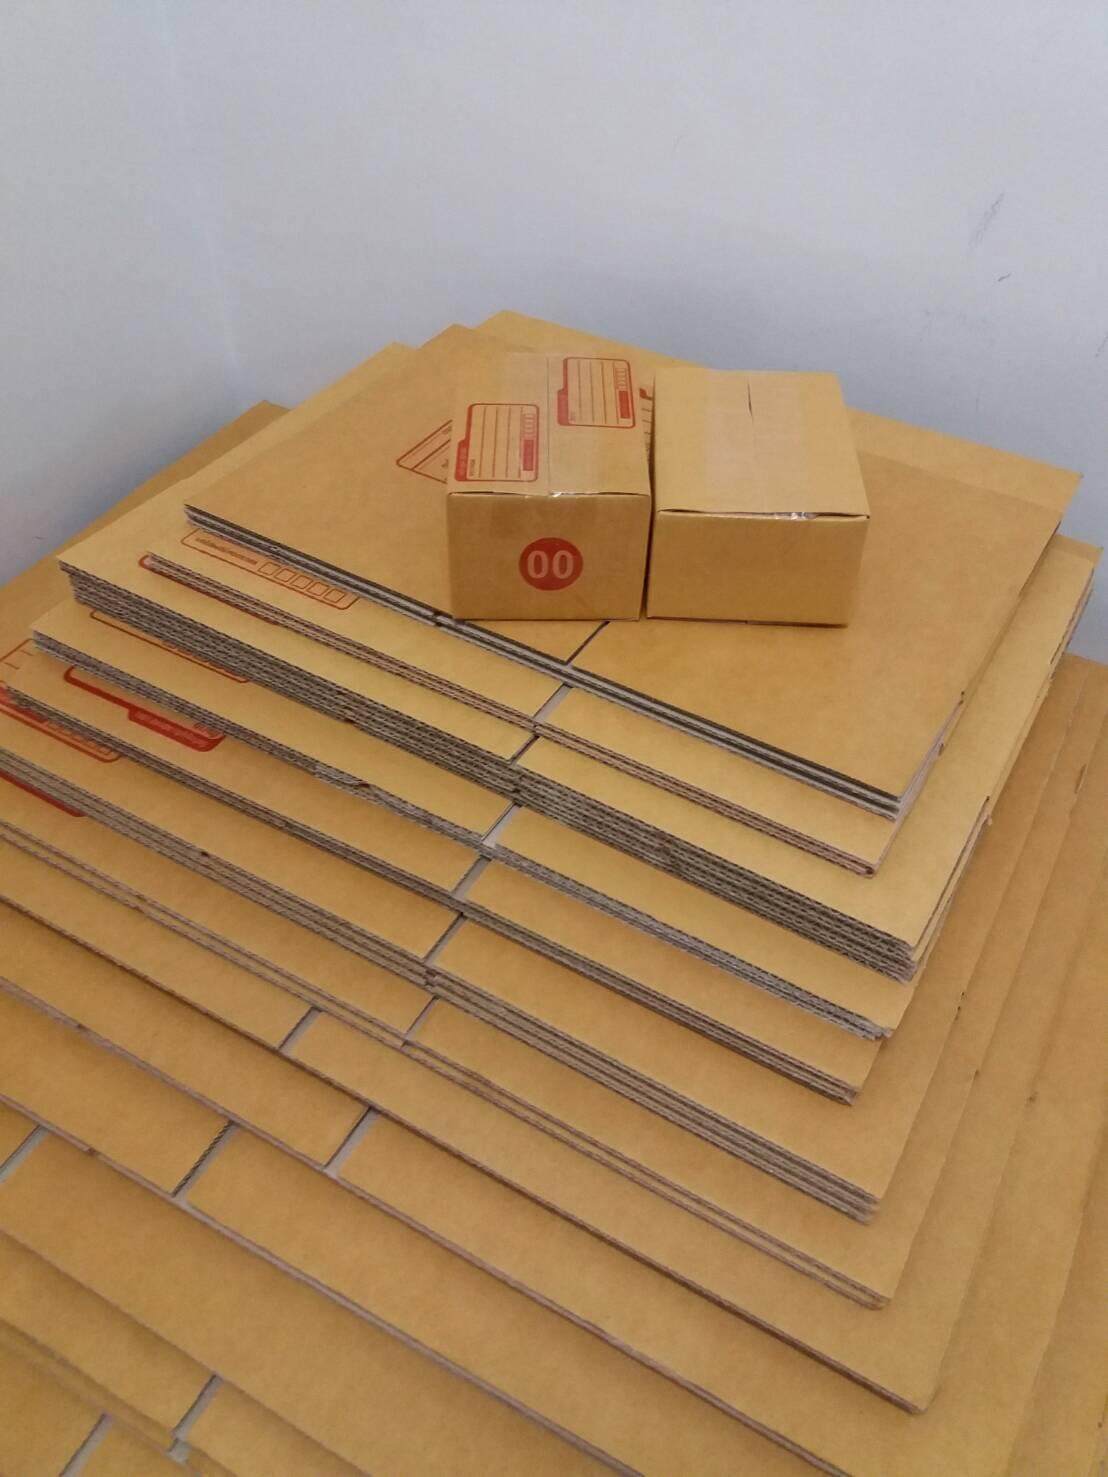 20 ใบ x Box 00 กล่องไปรษณีย์ เบอร์ 00 ลูกฟูก ฝาชน มีพิมพ์ อย่างหนา (20 ใบ ) No.00 T0002